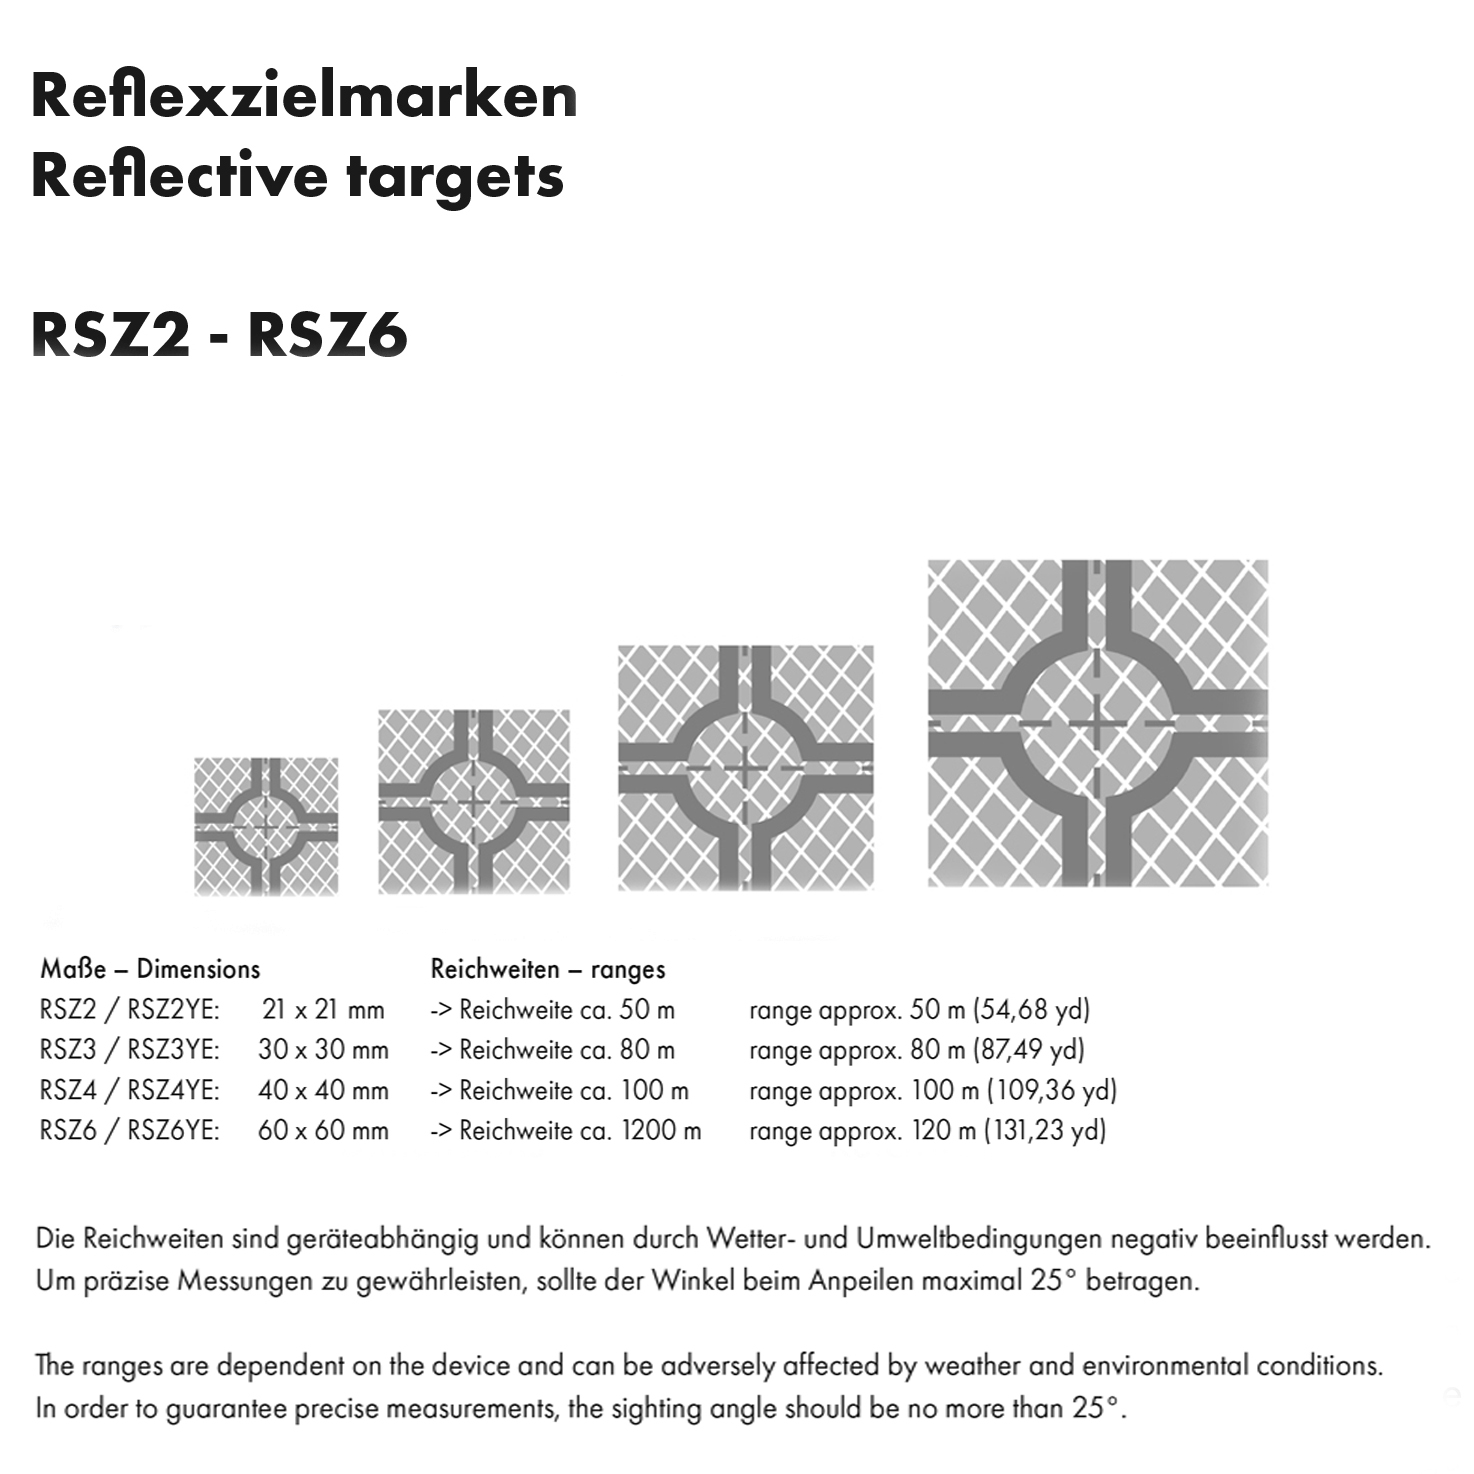 Reflexzielmarken - selbstklebend - RSZ4 40 x 40 mm auf Folie, Zielweite ca. 100 m